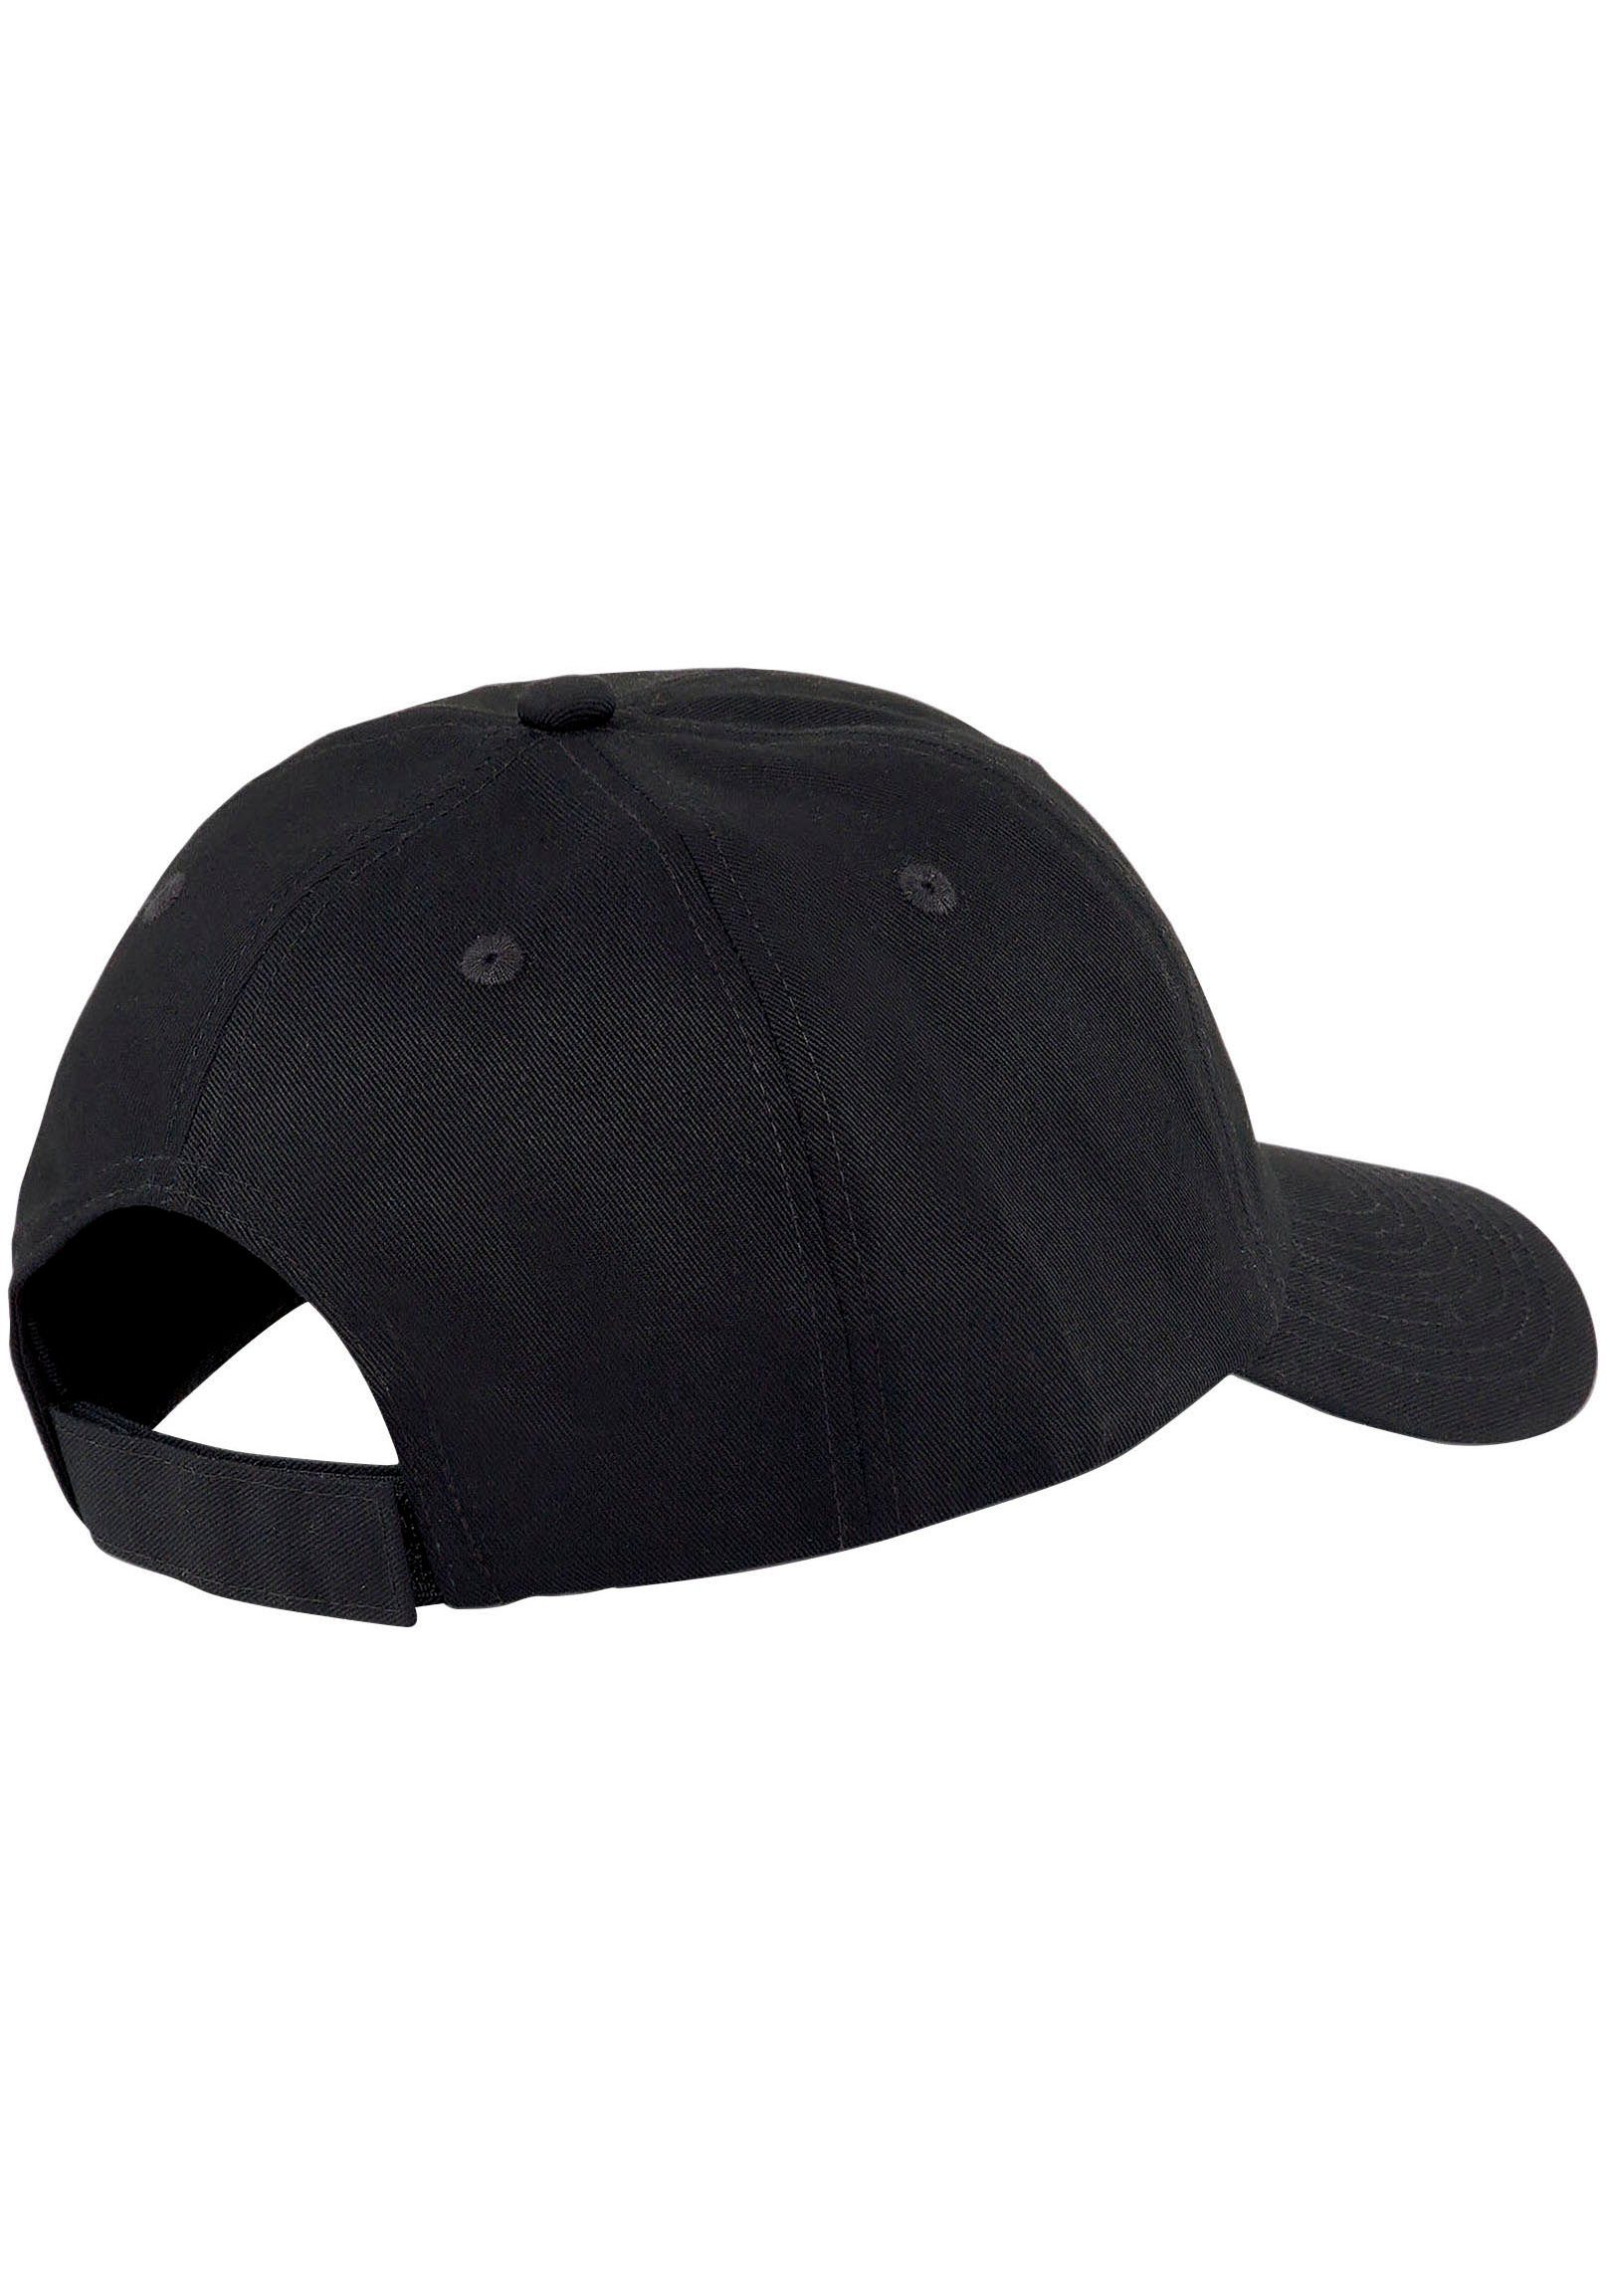 BB PUMA CAP Black-Gold Cap Logo PUMA NO.1 ESS Baseball No1